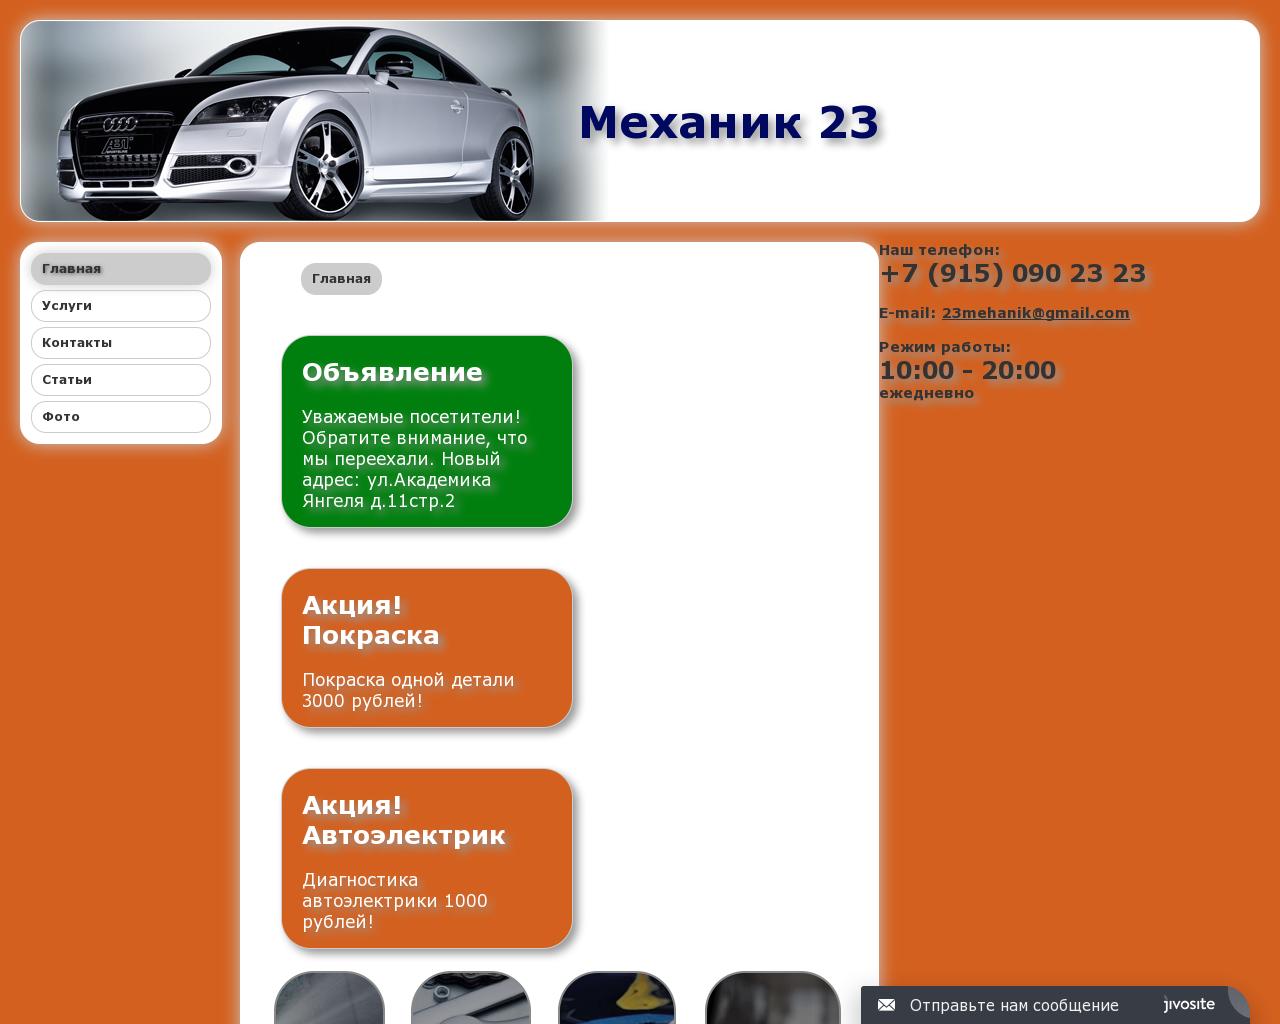 Изображение сайта механик23.рф в разрешении 1280x1024